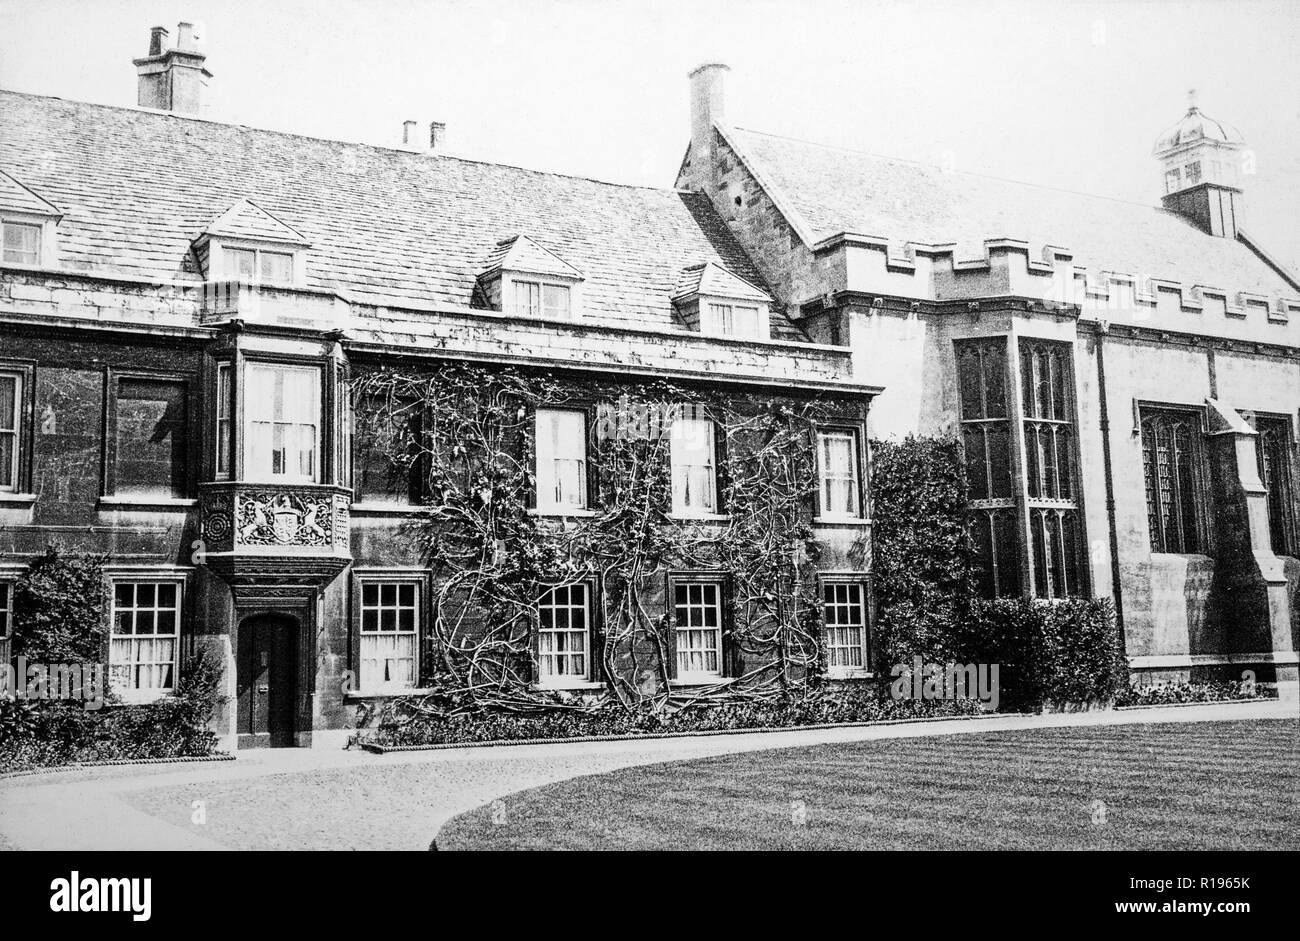 Un millésime 1996 Photographie noir et blanc, prises en mai 1924, montrant le Lodge au Christ's College, Université de Cambridge, Angleterre. Banque D'Images